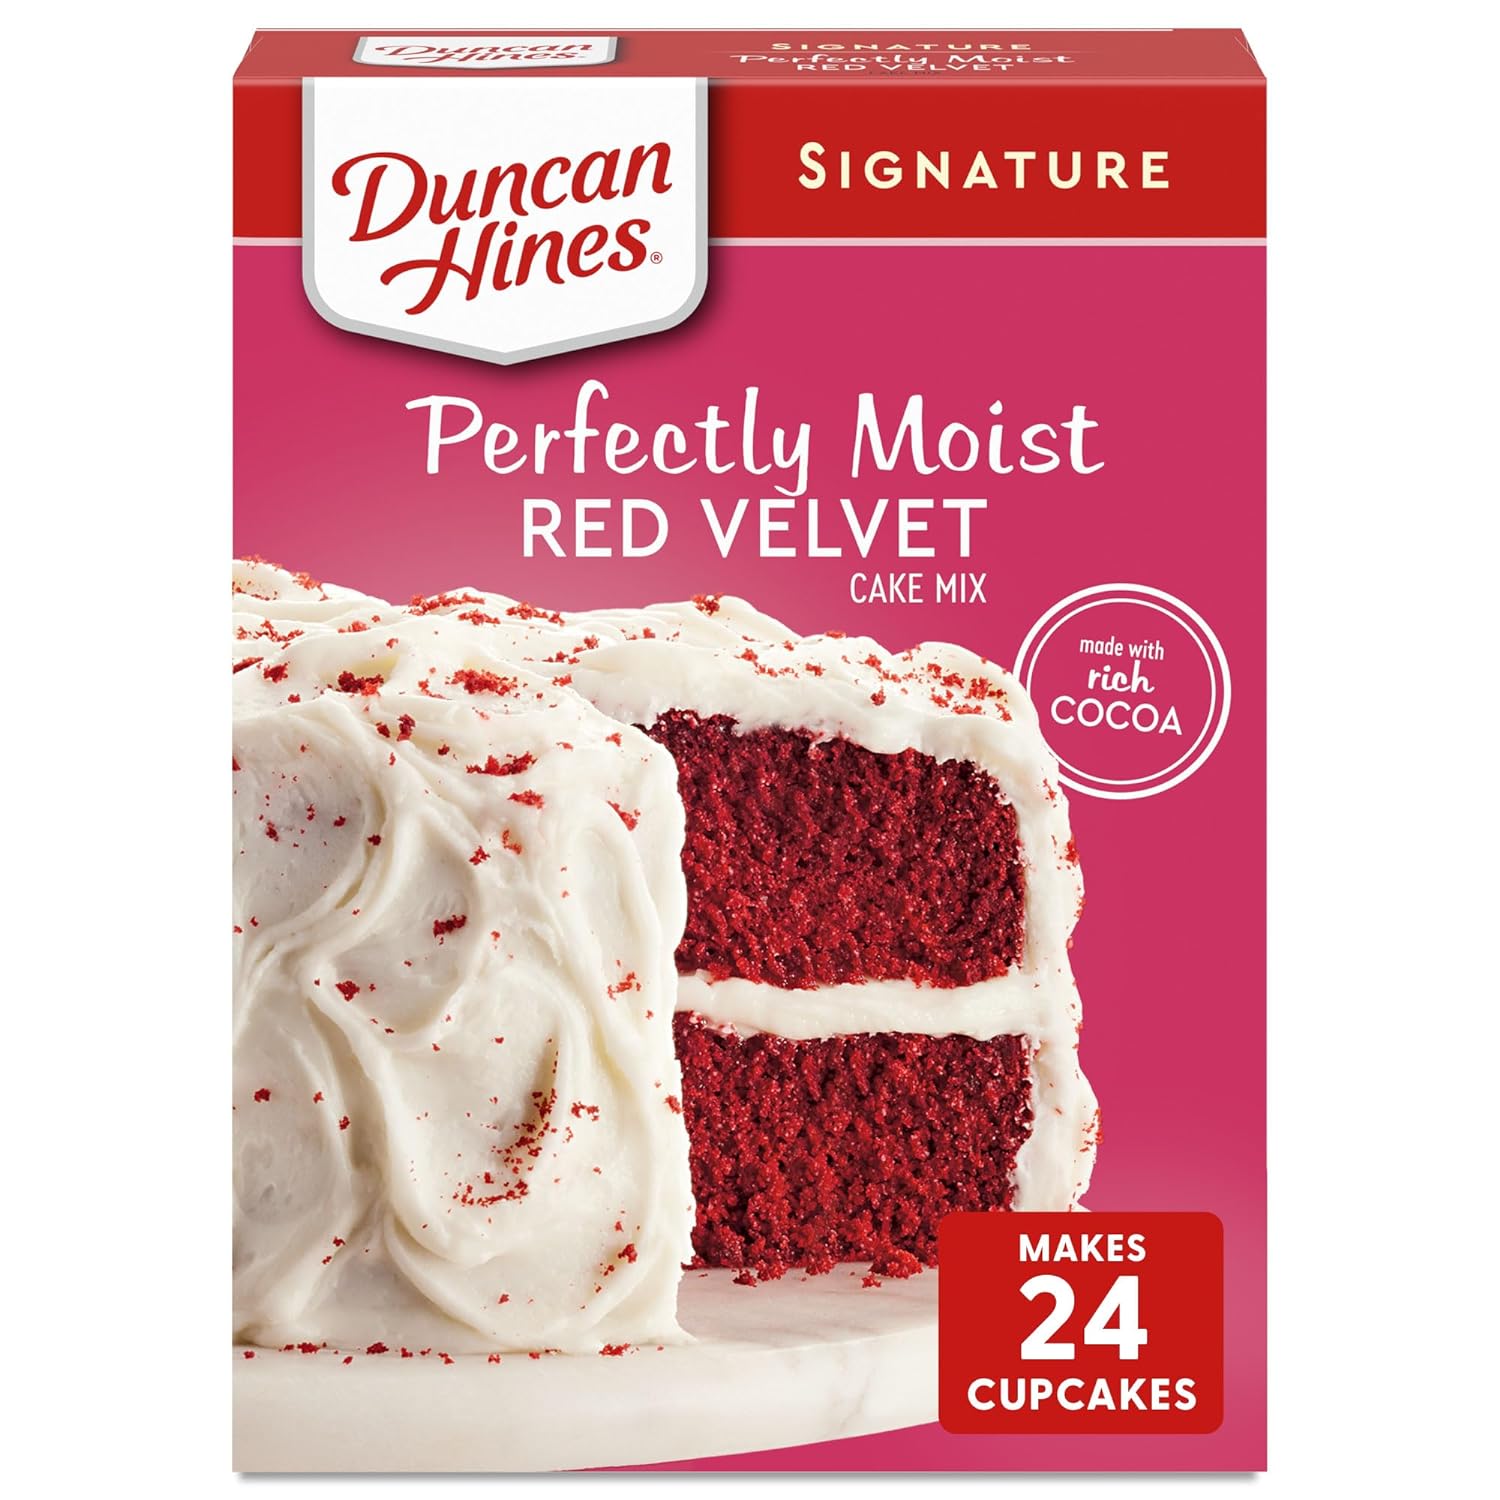 Duncan Hines Signature Cake Mix, Red Velvet, 15.25 oz